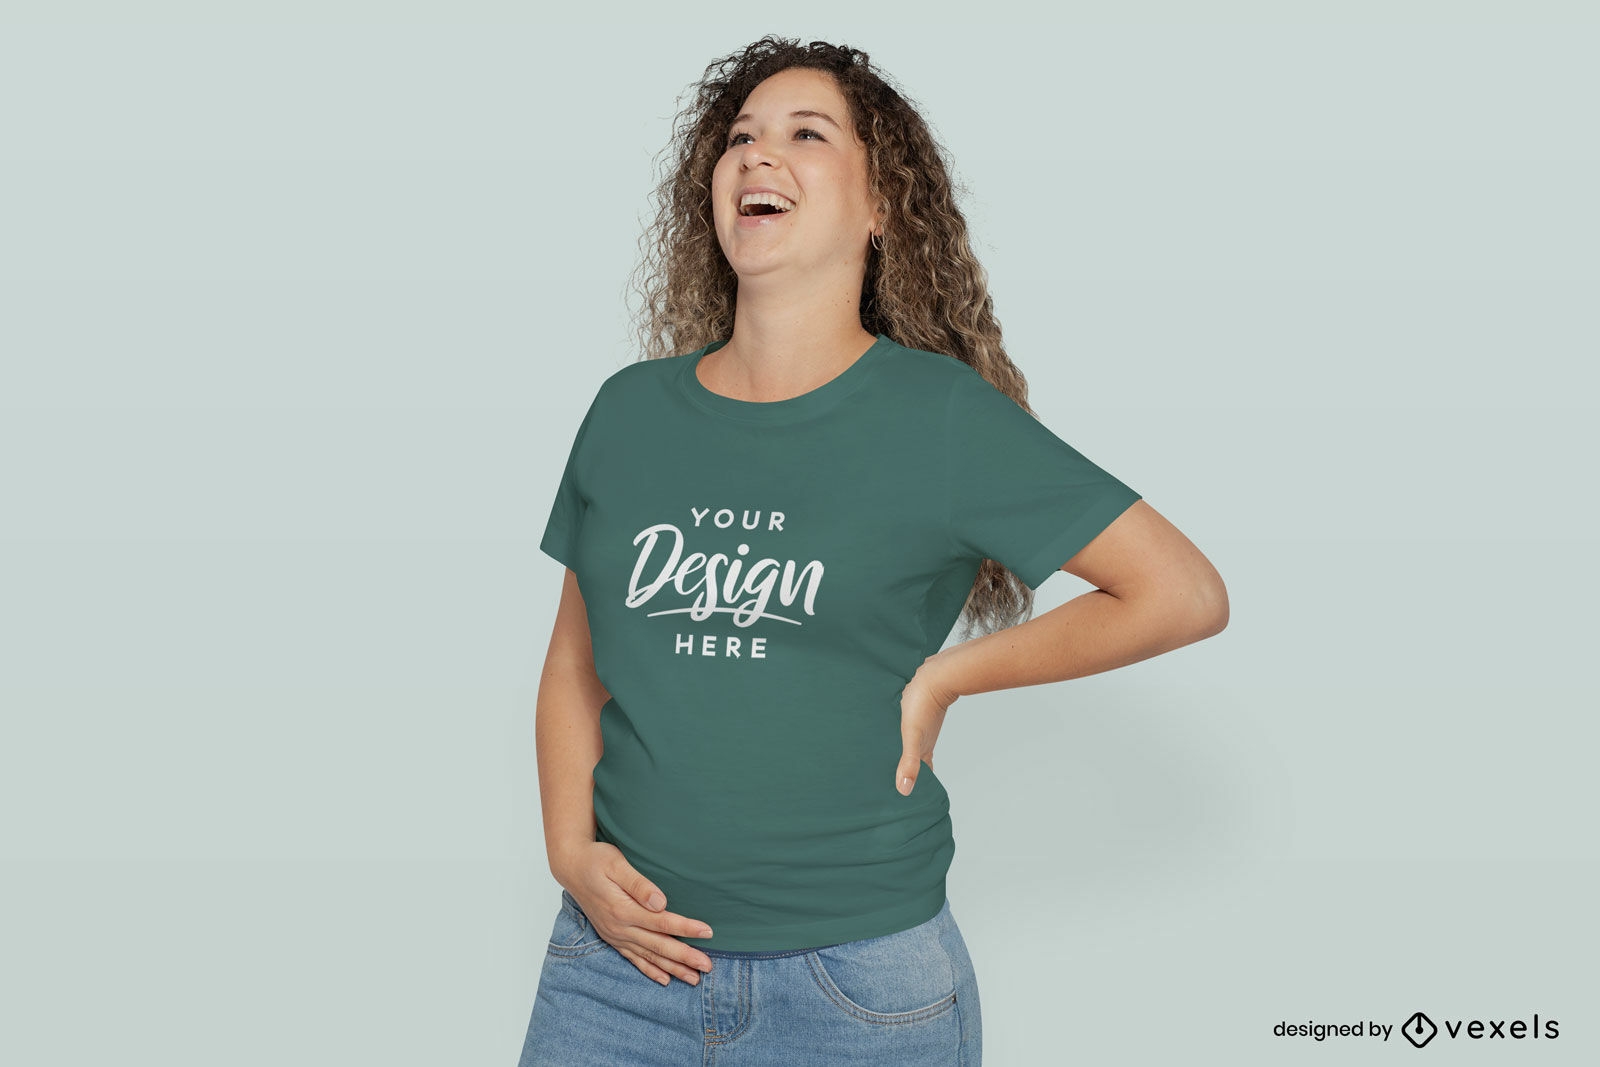 Maqueta de camiseta de mujer embarazada riendo